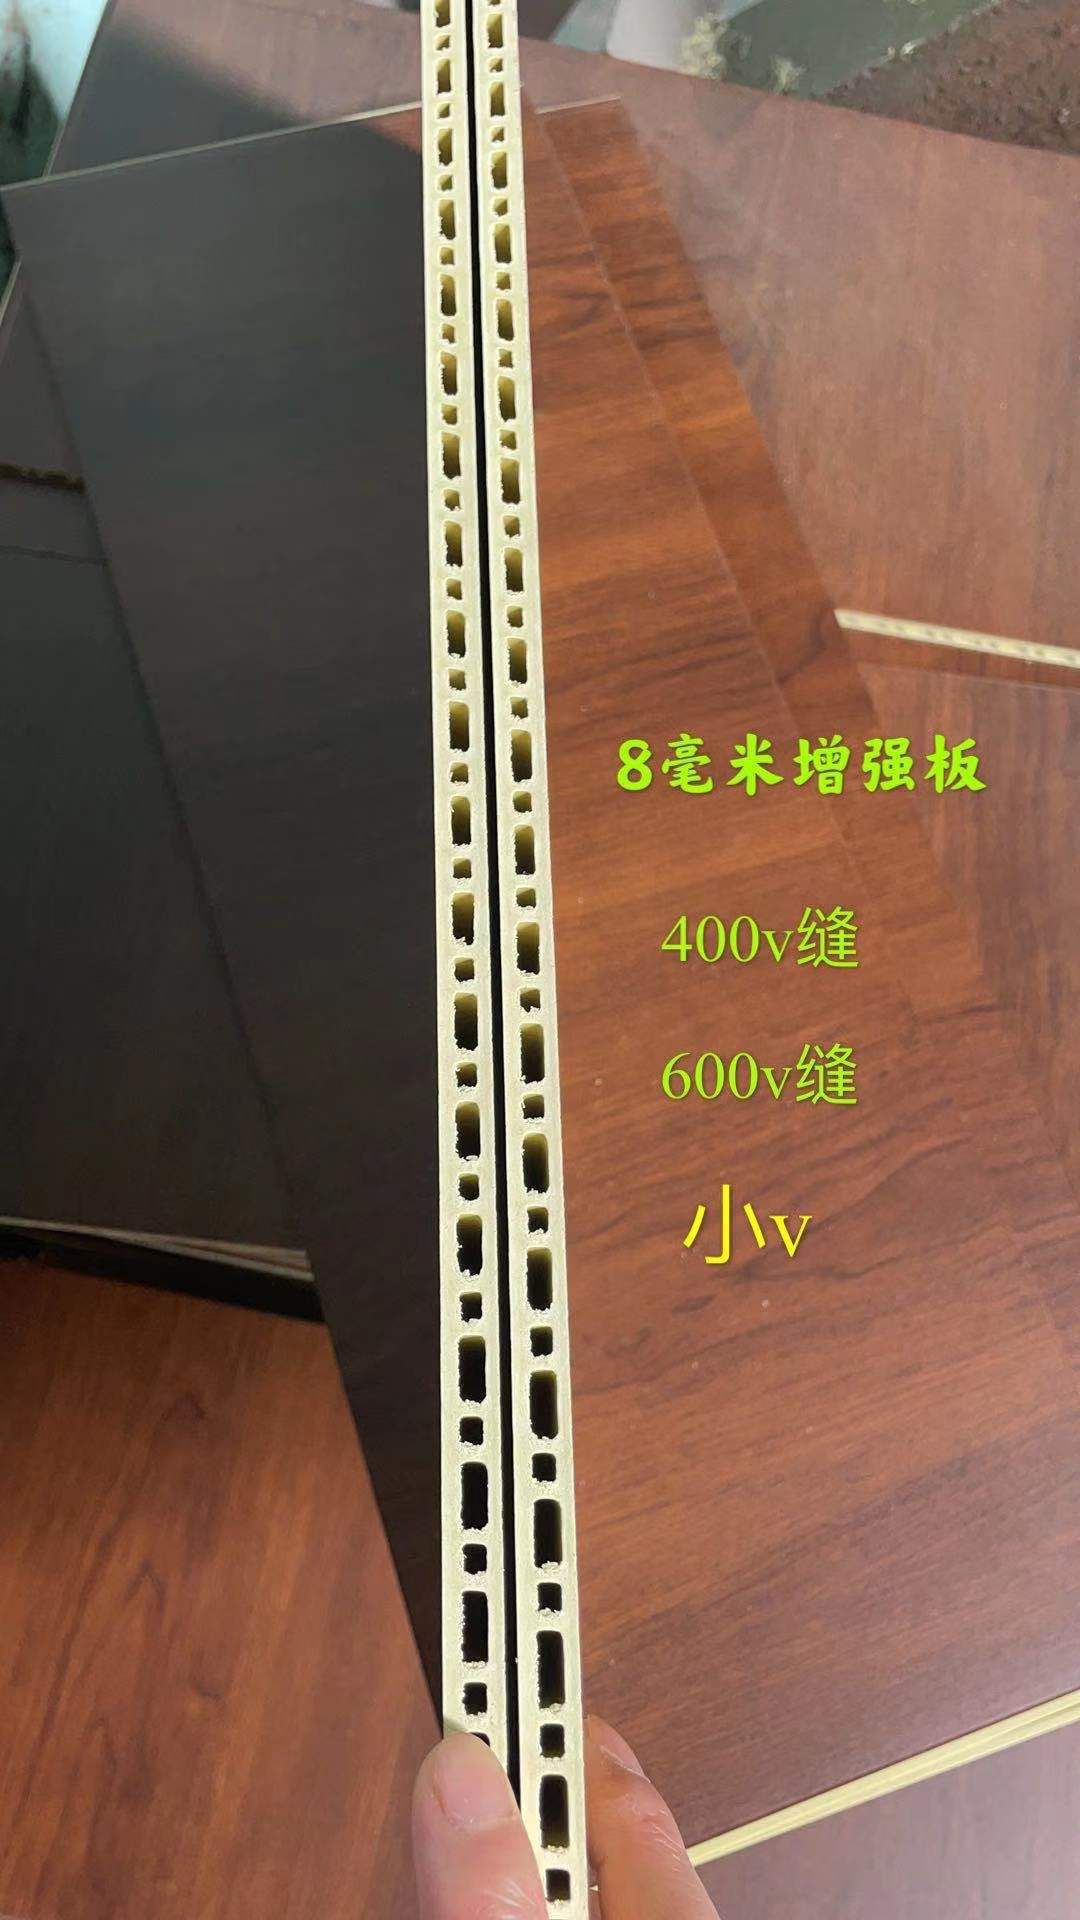 浩鵬科技 增強面板 8毫米增強板 400v縫 600v縫 小